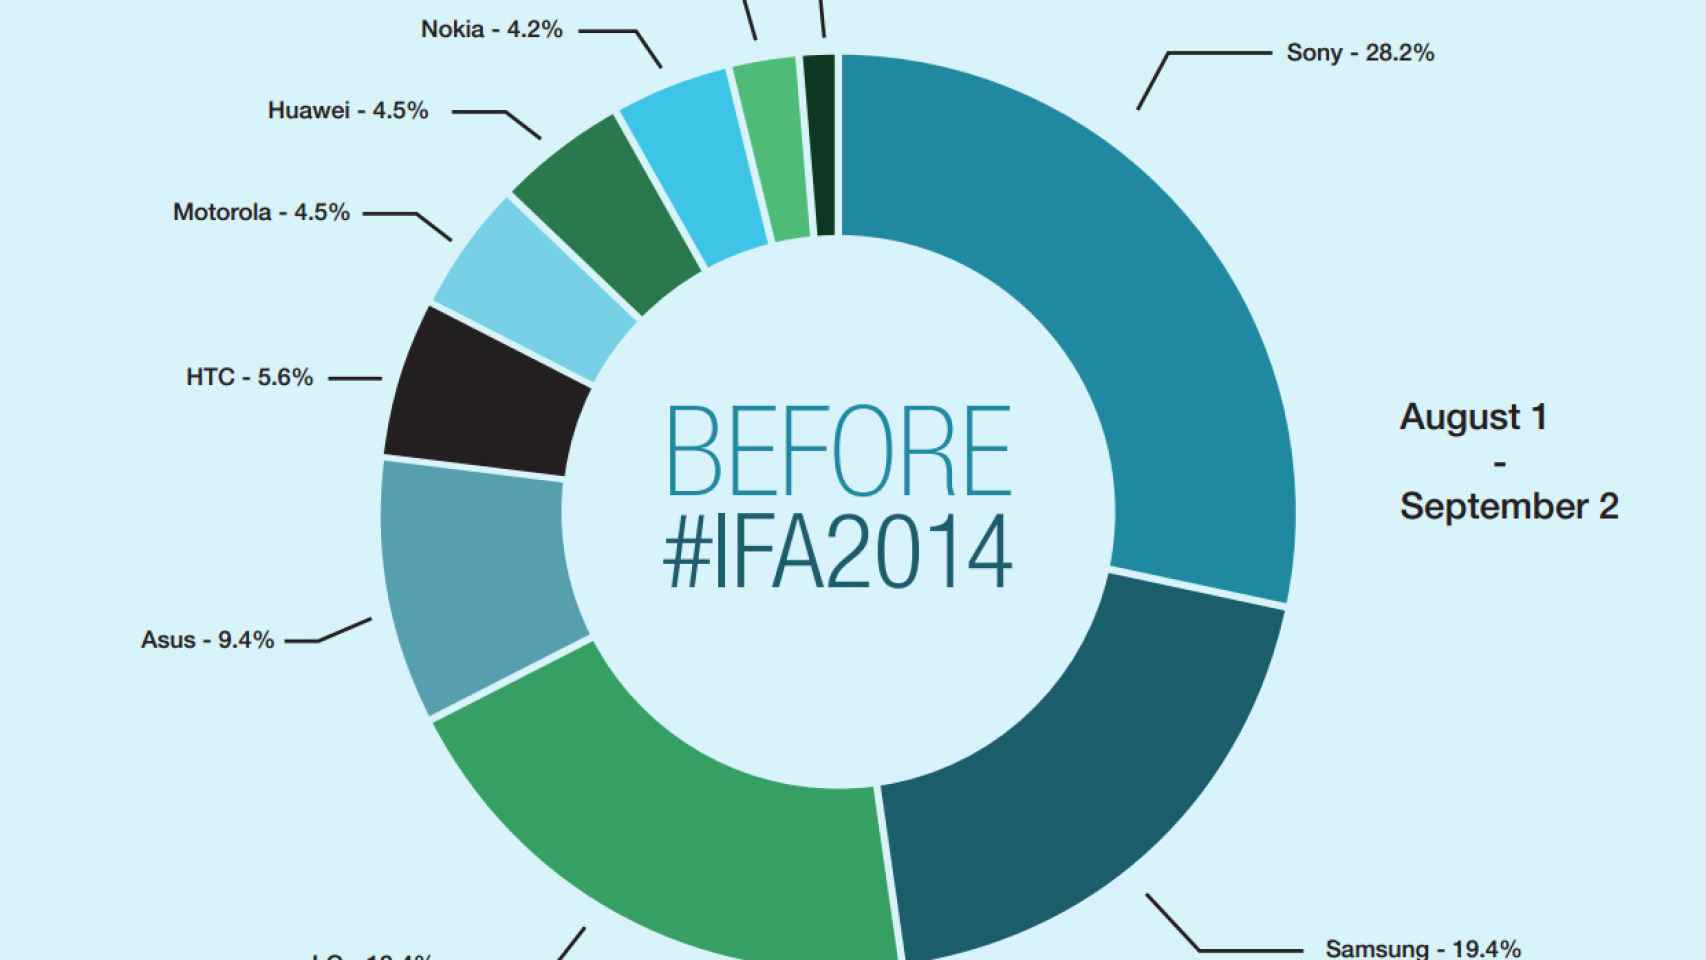 Descubre la repercusión en Twitter durante el IFA 2014 de las grandes marcas